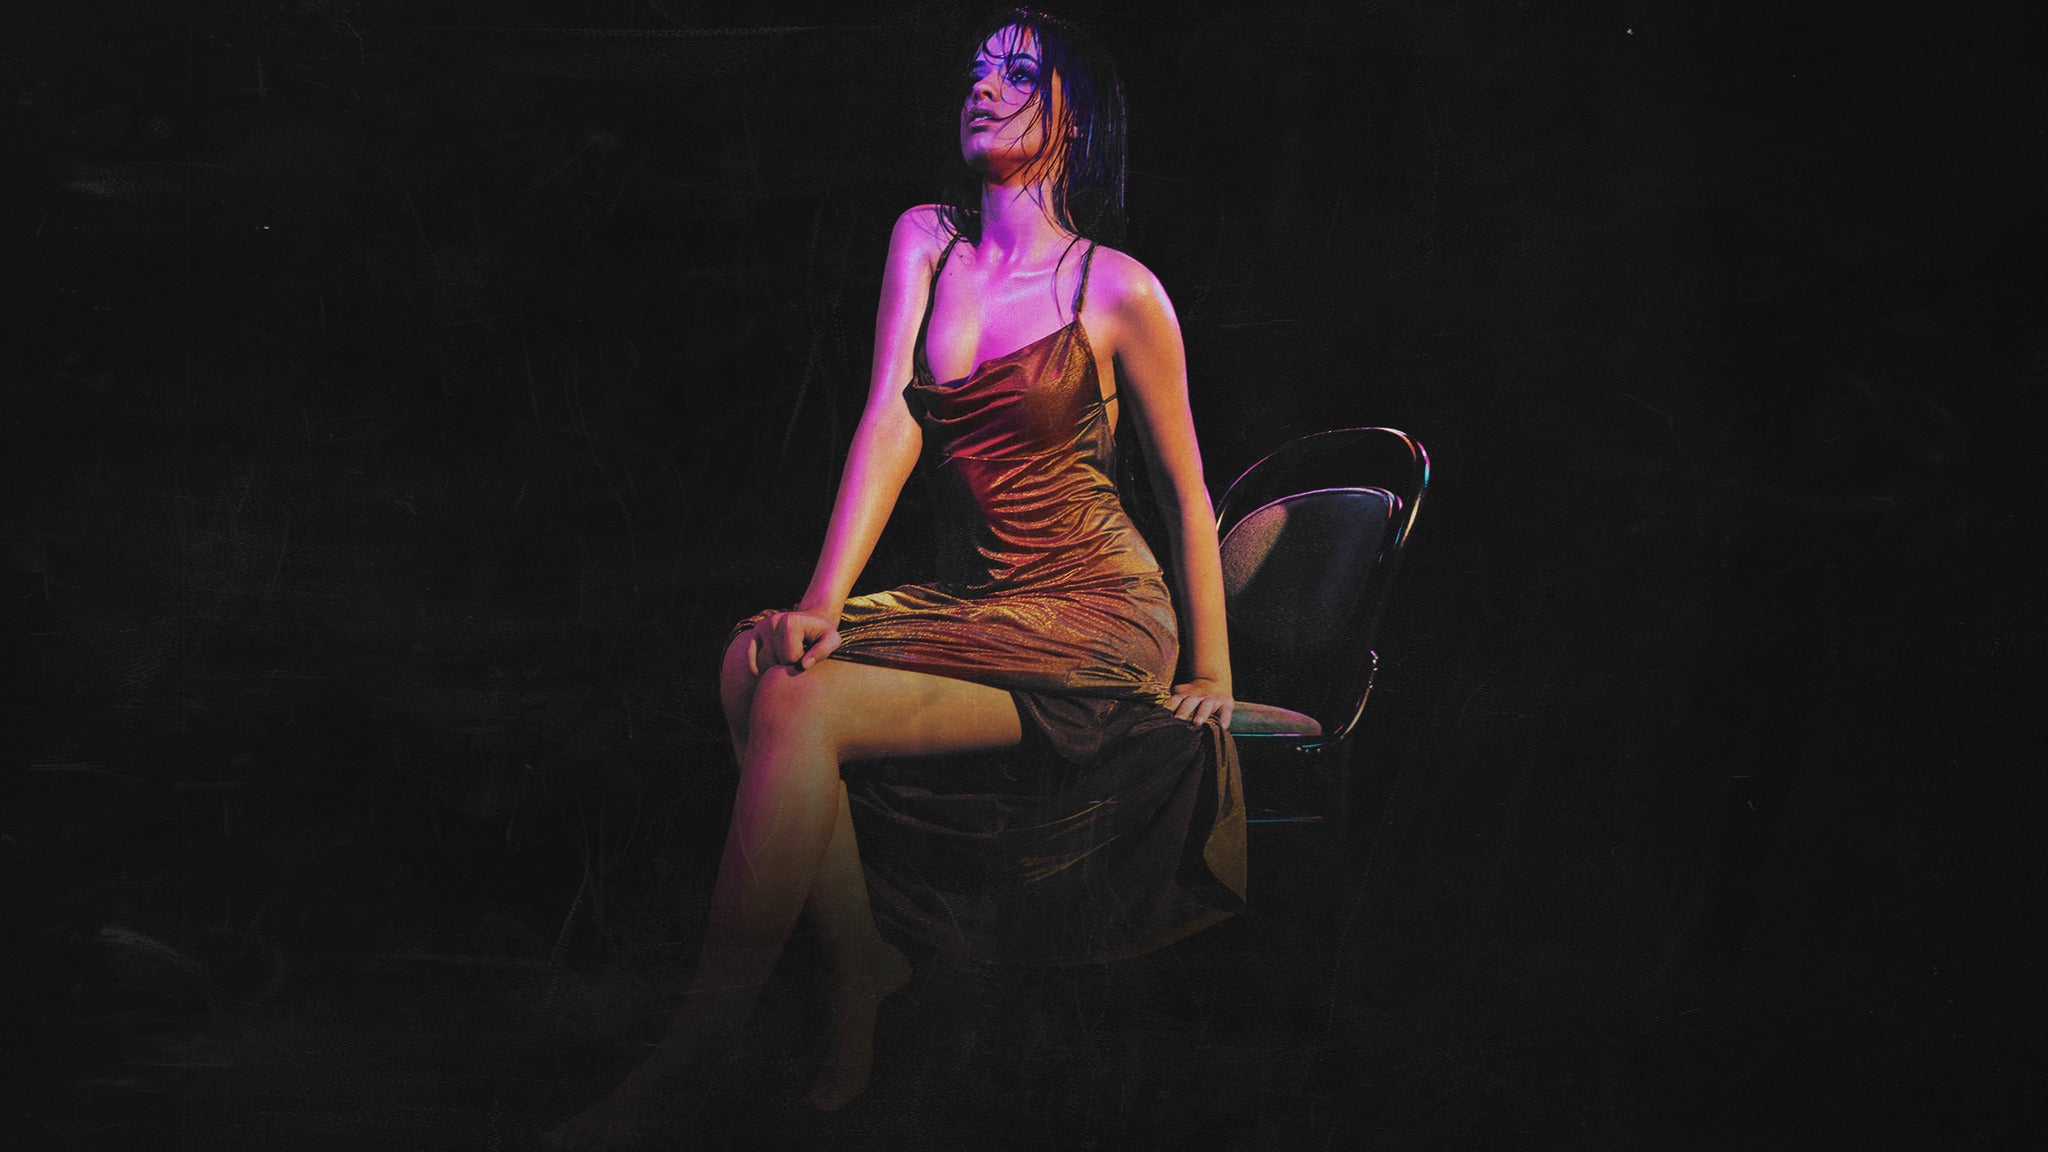 Camila Cabello: The Romance Tour presented by Mastercard in Miami promo photo for AEG / Venue presale offer code